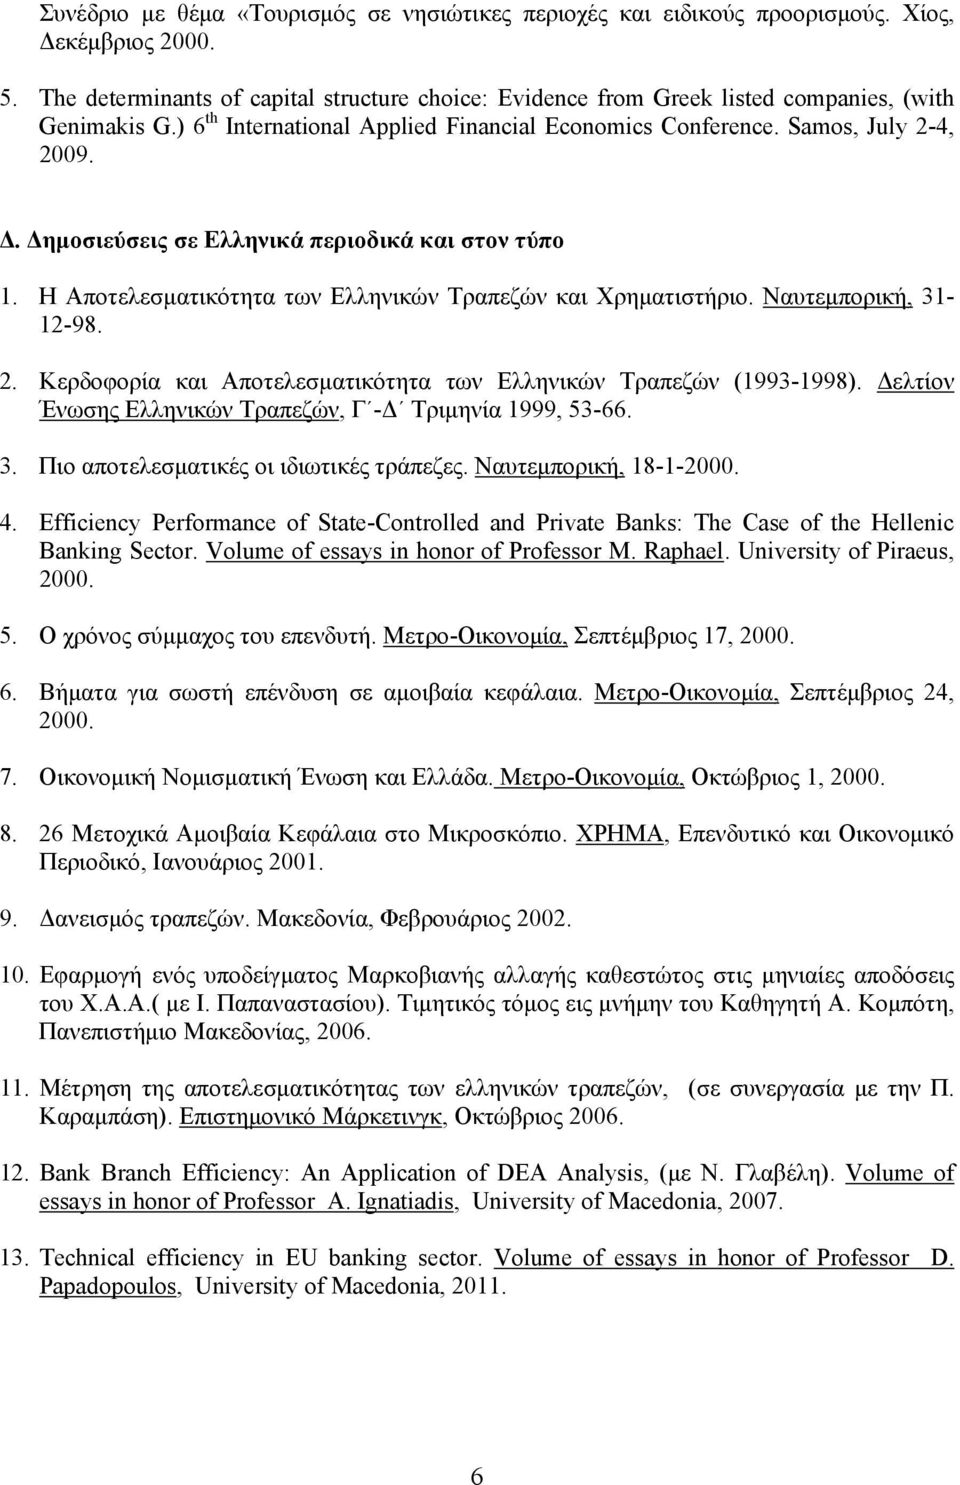 Δημοσιεύσεις σε Ελληνικά περιοδικά και στον τύπο 1. Η Αποτελεσματικότητα των Ελληνικών Τραπεζών και Xρηματιστήριο. Ναυτεμπορική, 31-12-98. 2.